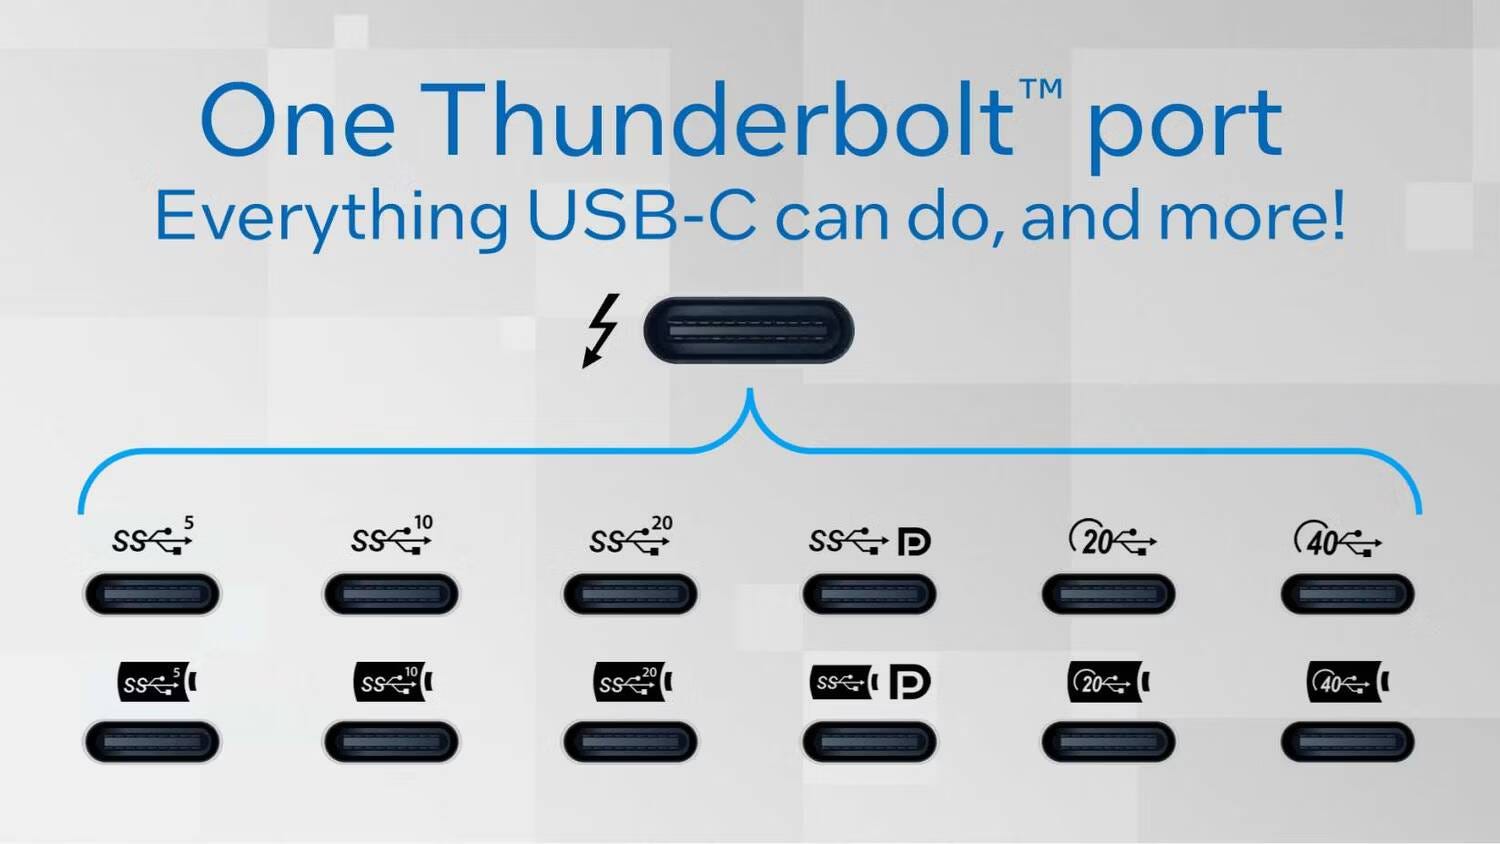 مُقارنة بين USB4 و Thunderbolt 4: توضيح или жеجه التشابه والاختلاف - شروحات